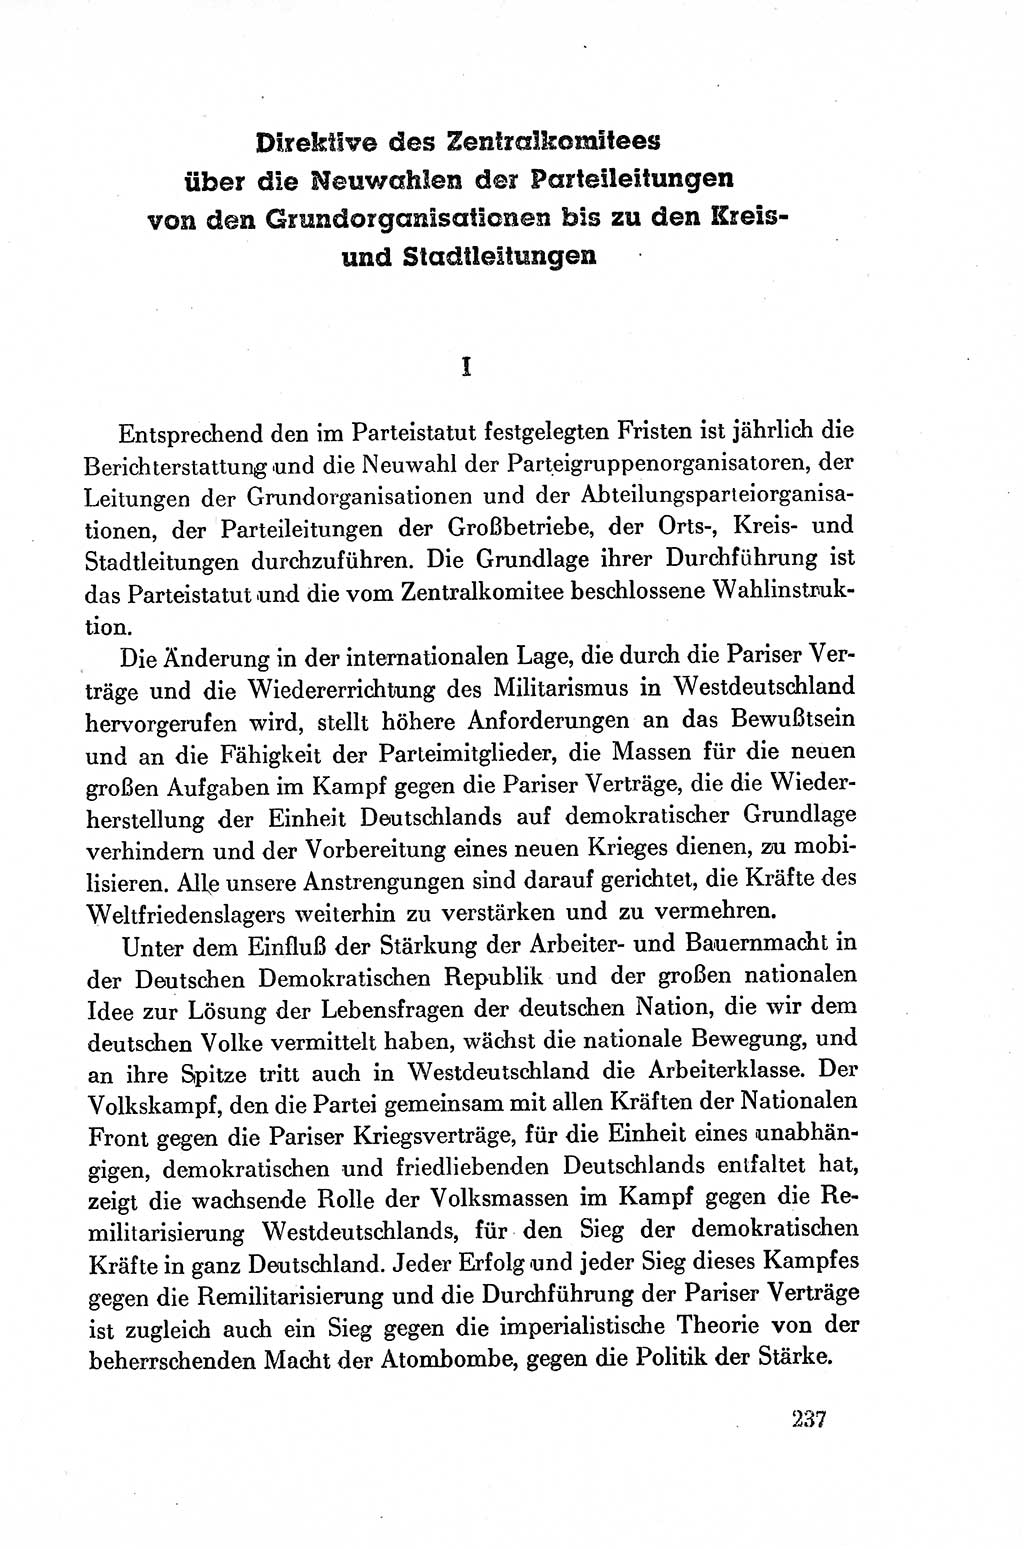 Dokumente der Sozialistischen Einheitspartei Deutschlands (SED) [Deutsche Demokratische Republik (DDR)] 1954-1955, Seite 237 (Dok. SED DDR 1954-1955, S. 237)